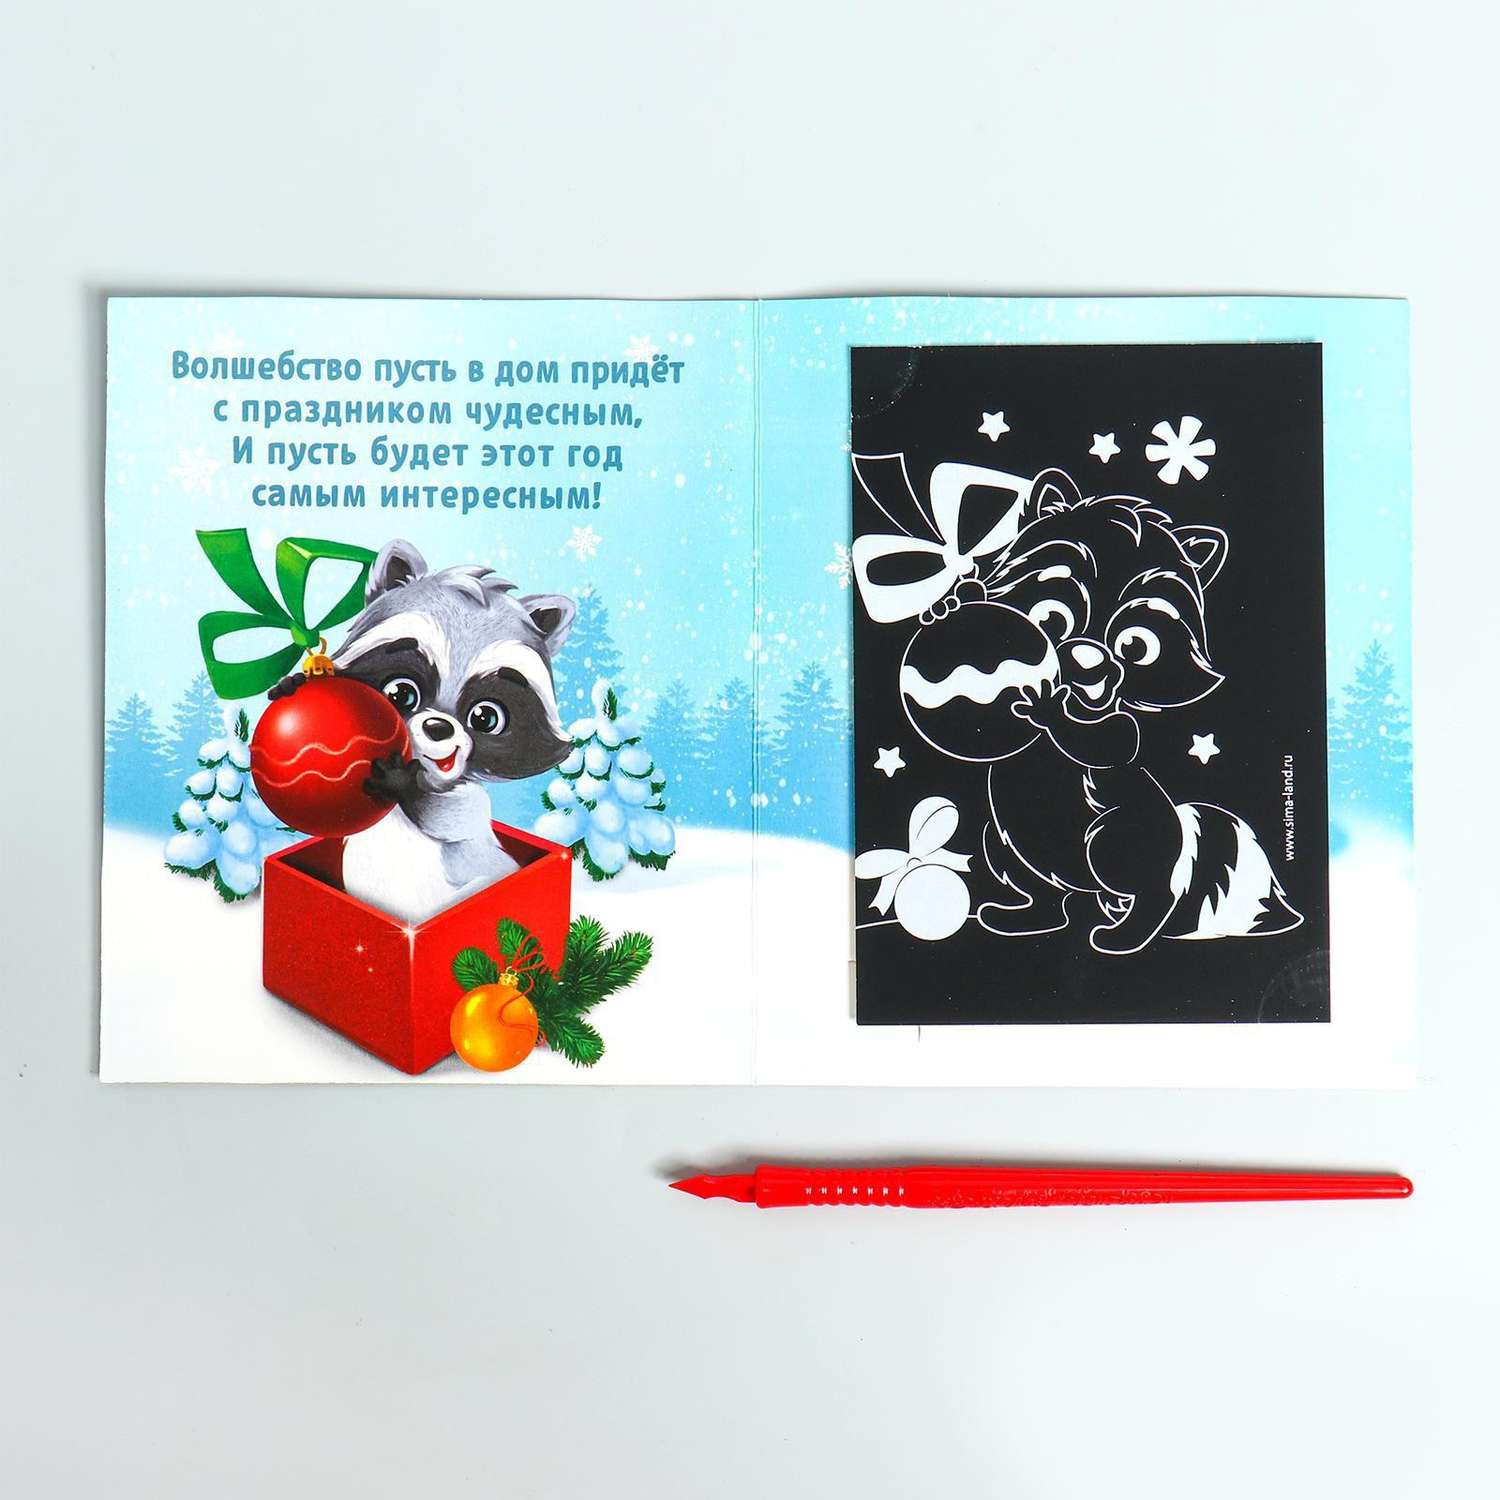 Набор для творчества Школа Талантов Роспись по холсту и гравюра-открытка «Подарок от Деда Мороза» - фото 2